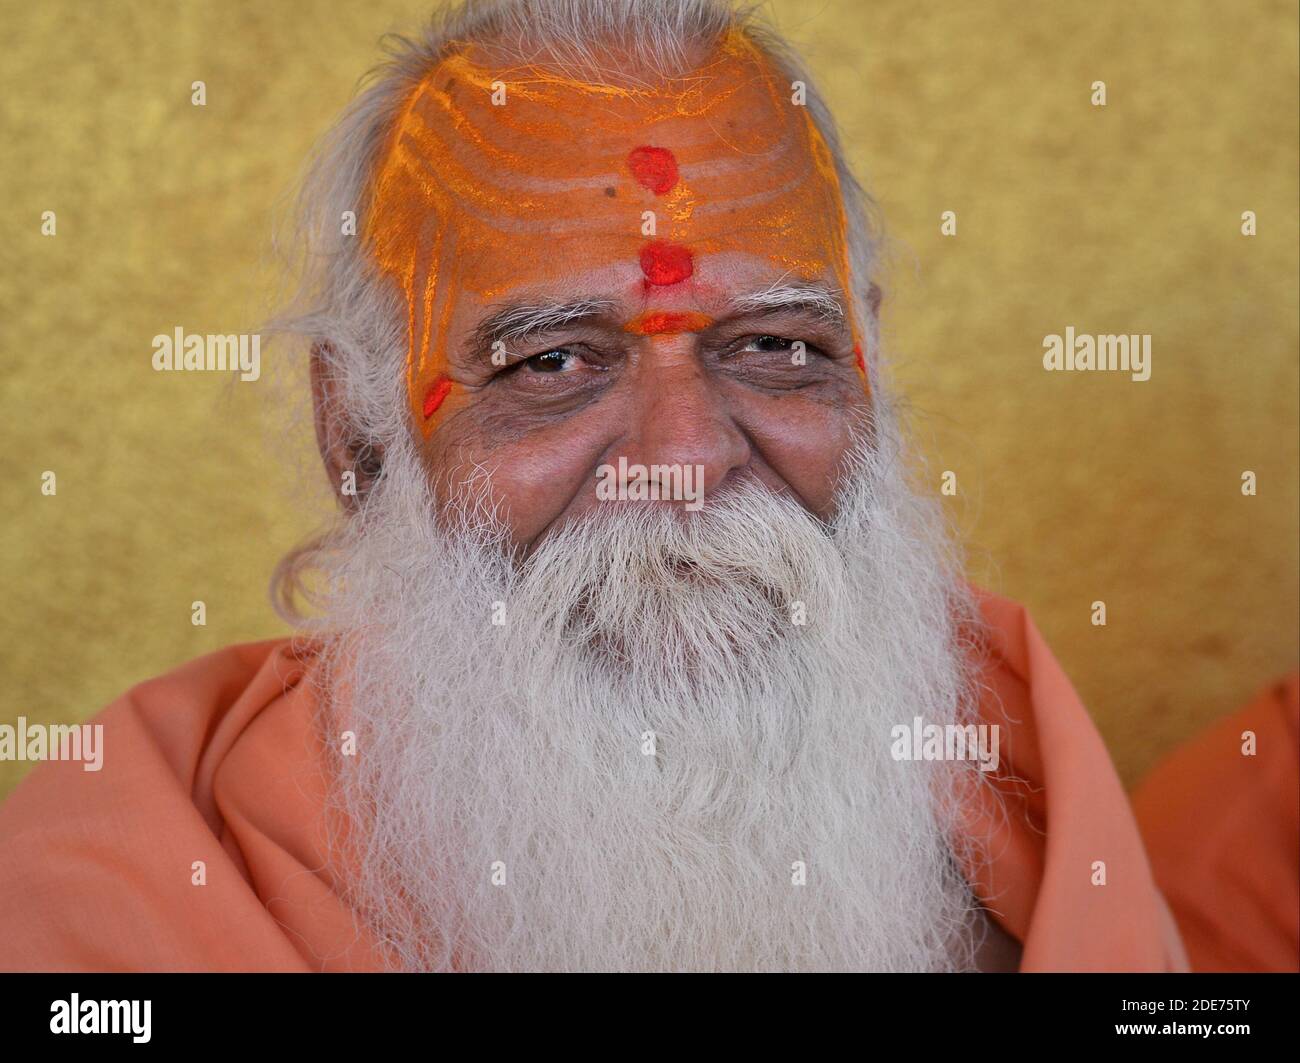 Sehr alter indischer Hindu-Heiliger (Sadhu, Guru, baba) mit einem dicken weißen Bart und gelber Sandelholzpaste auf seiner hohen Stirn stellt sich für die Kamera. Stockfoto